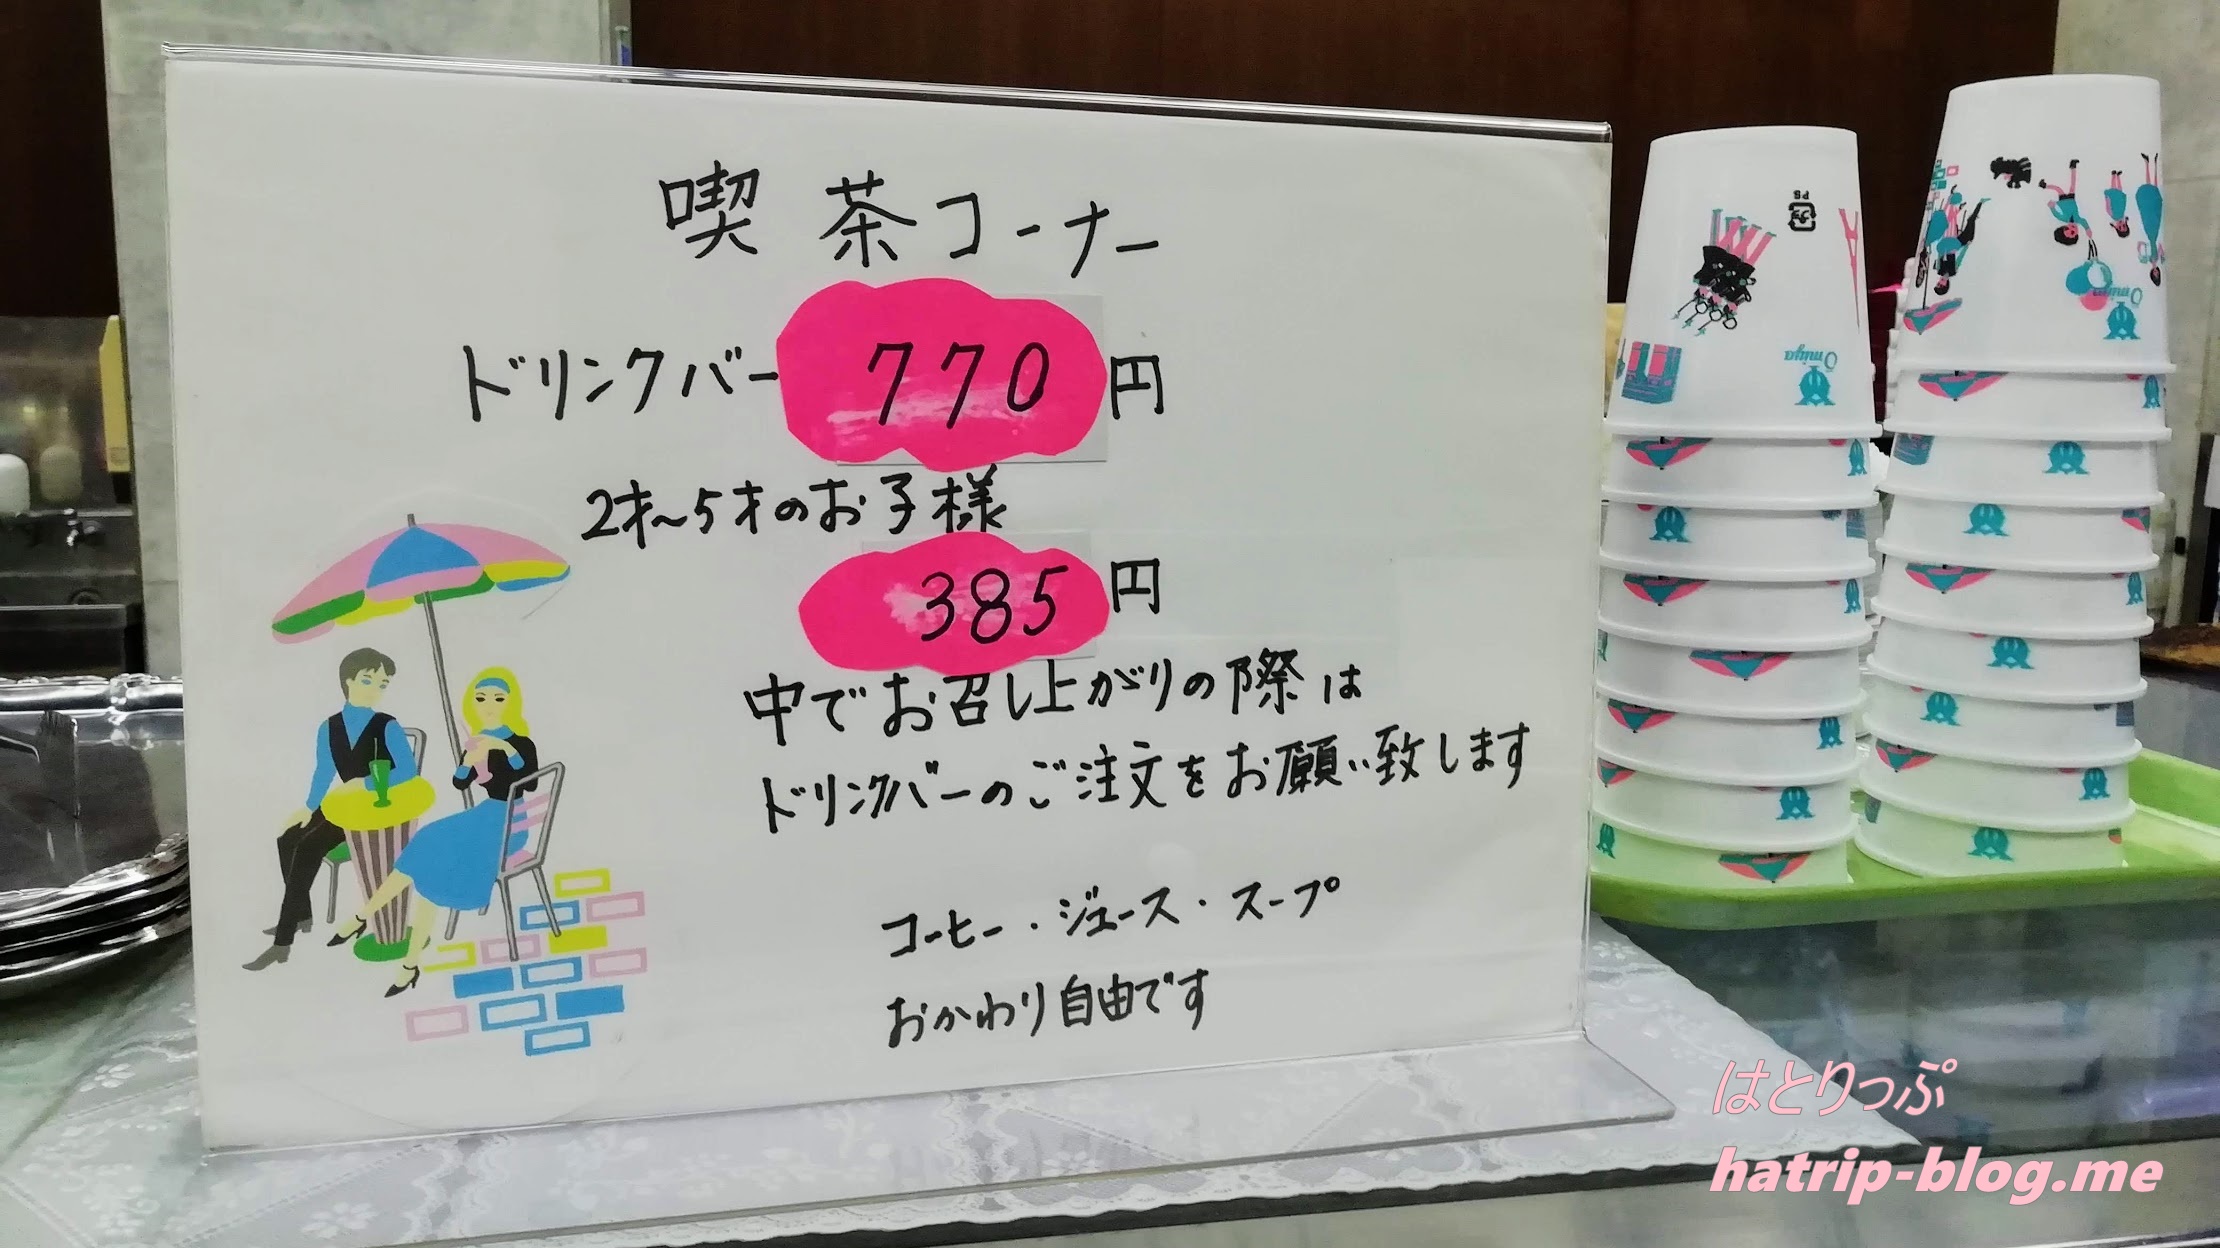 東京都千代田区神田 近江屋洋菓子店 イートイン ドリンクバー 値段